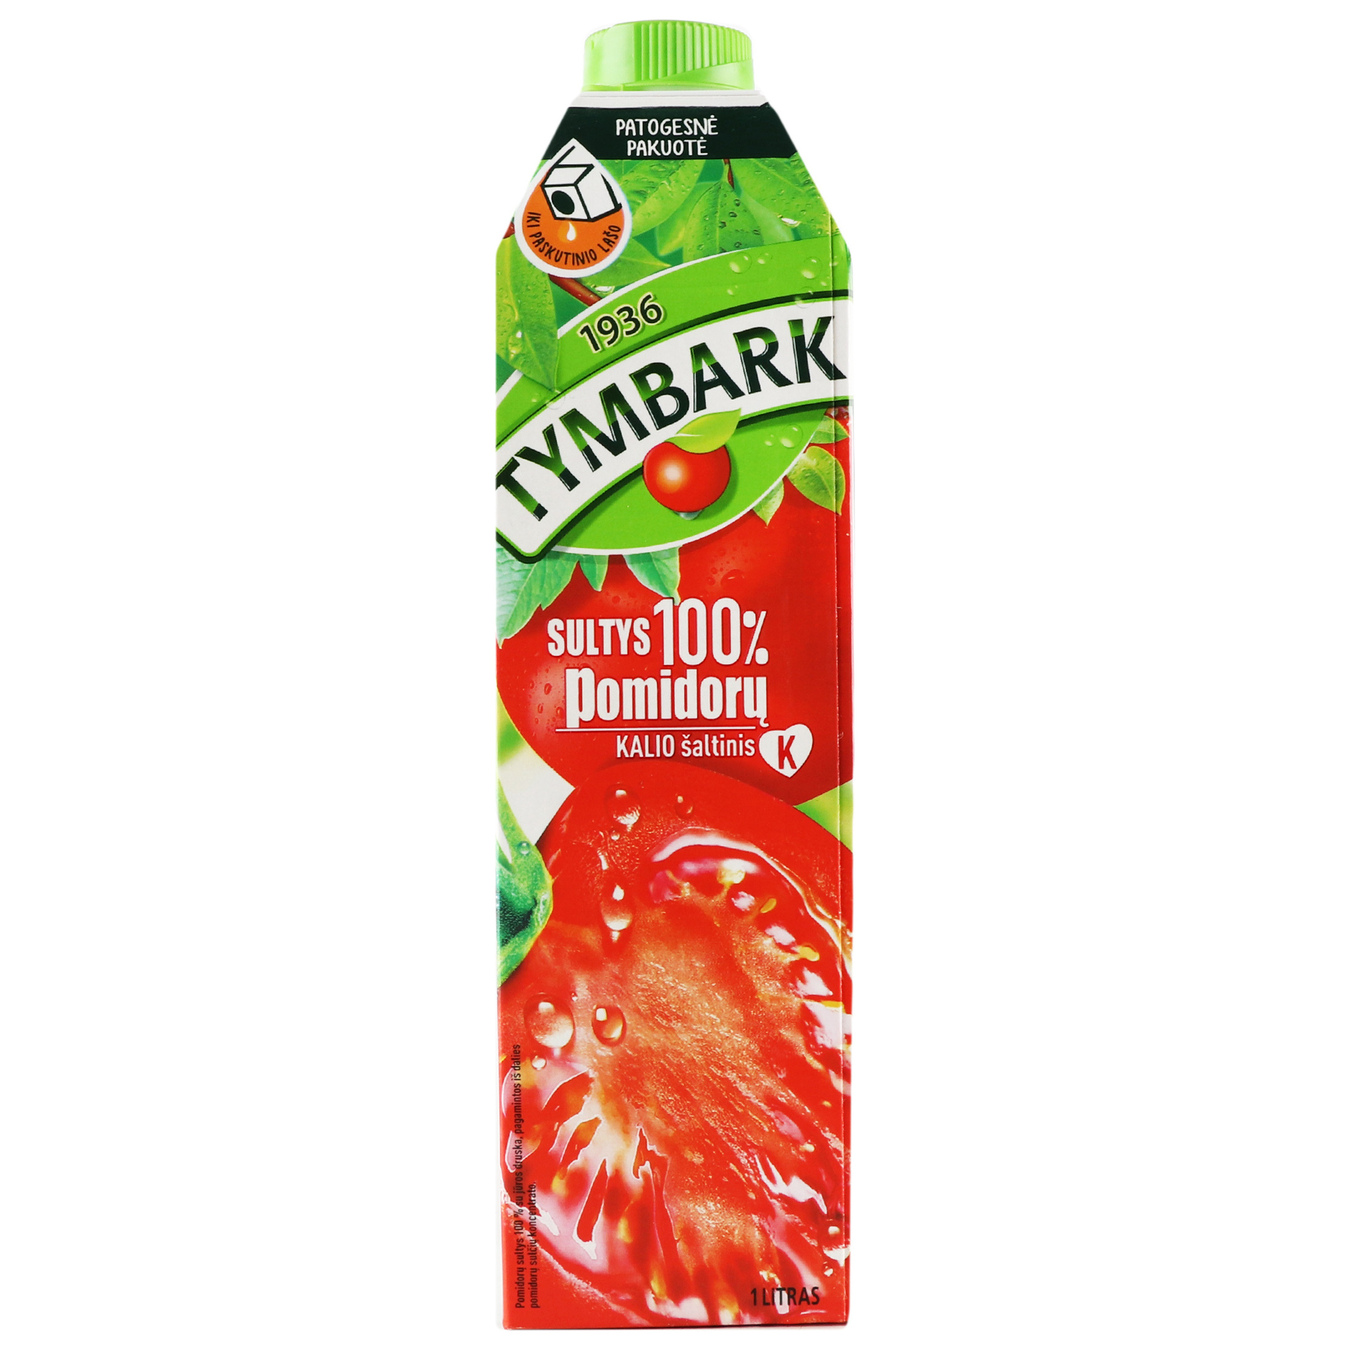 Tymbark tomato juice 1 l